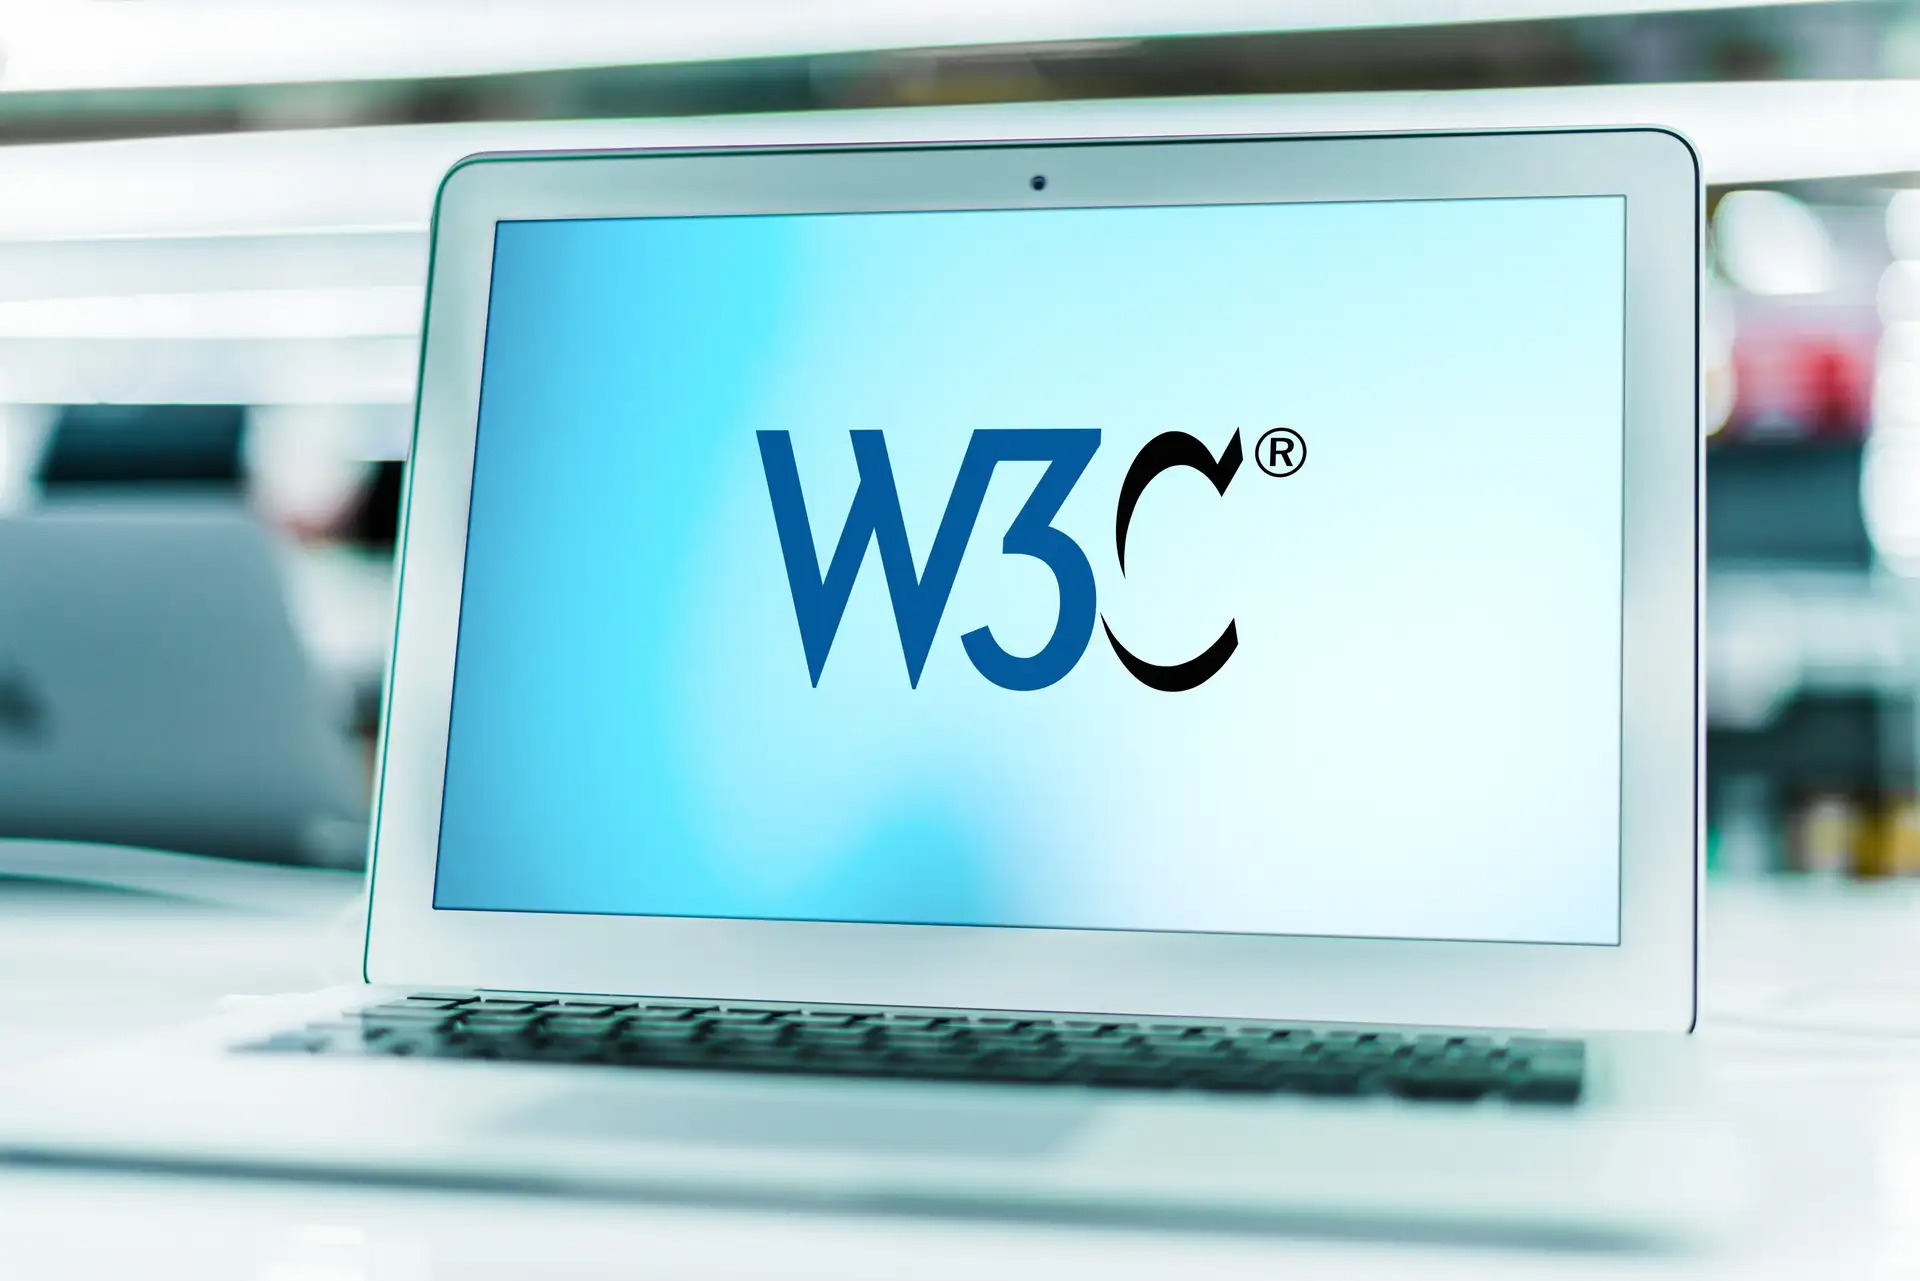 w3c - W3C: Was ist das? Eine Definition